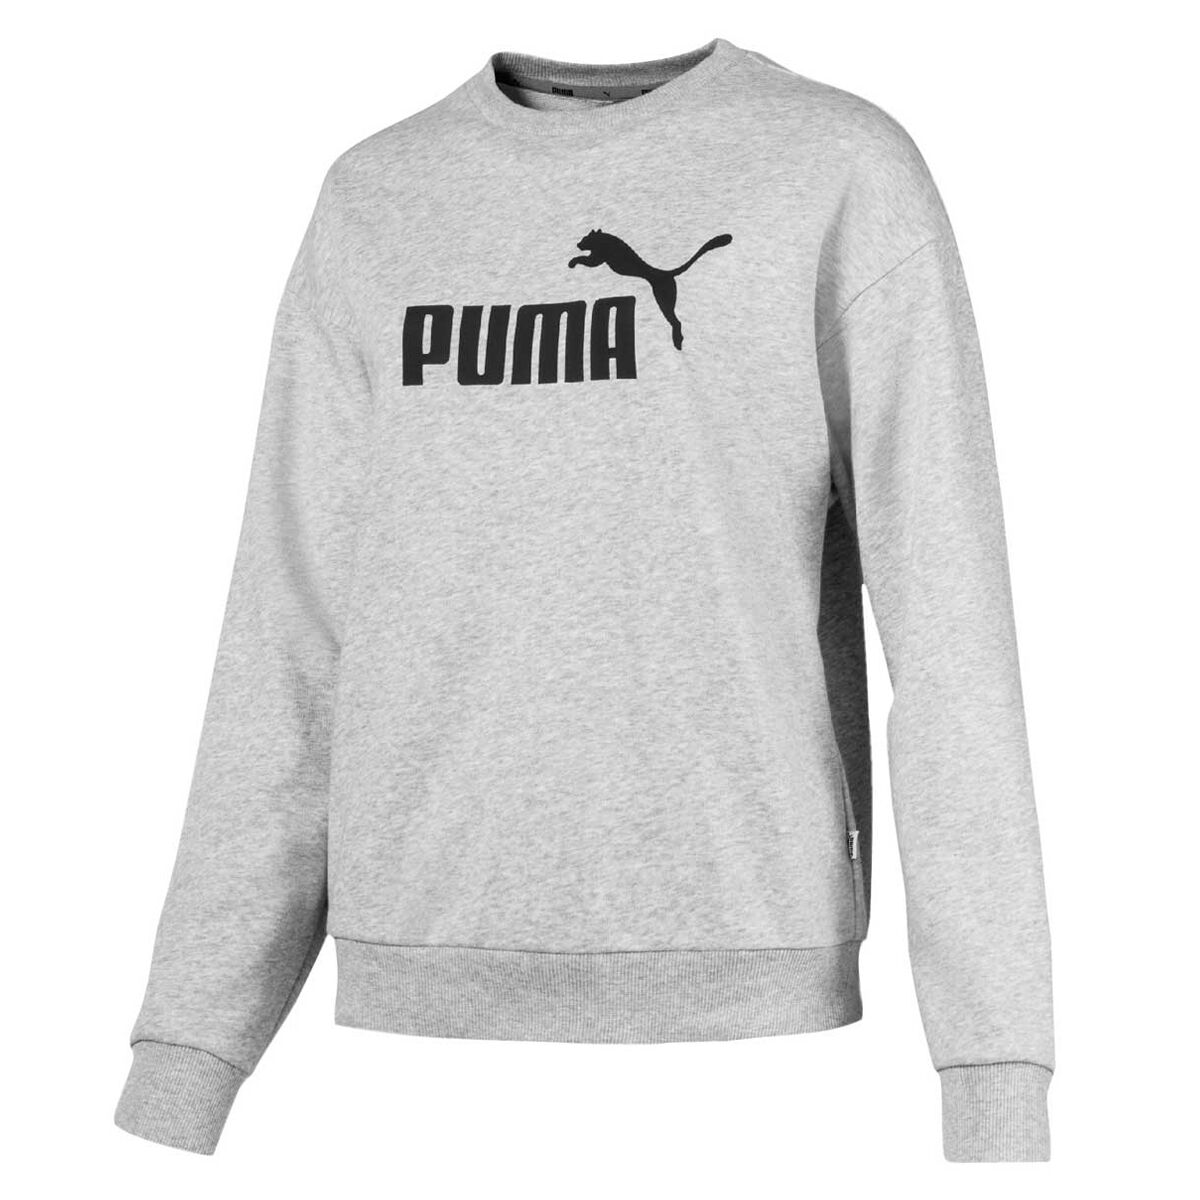 womens black puma jumper